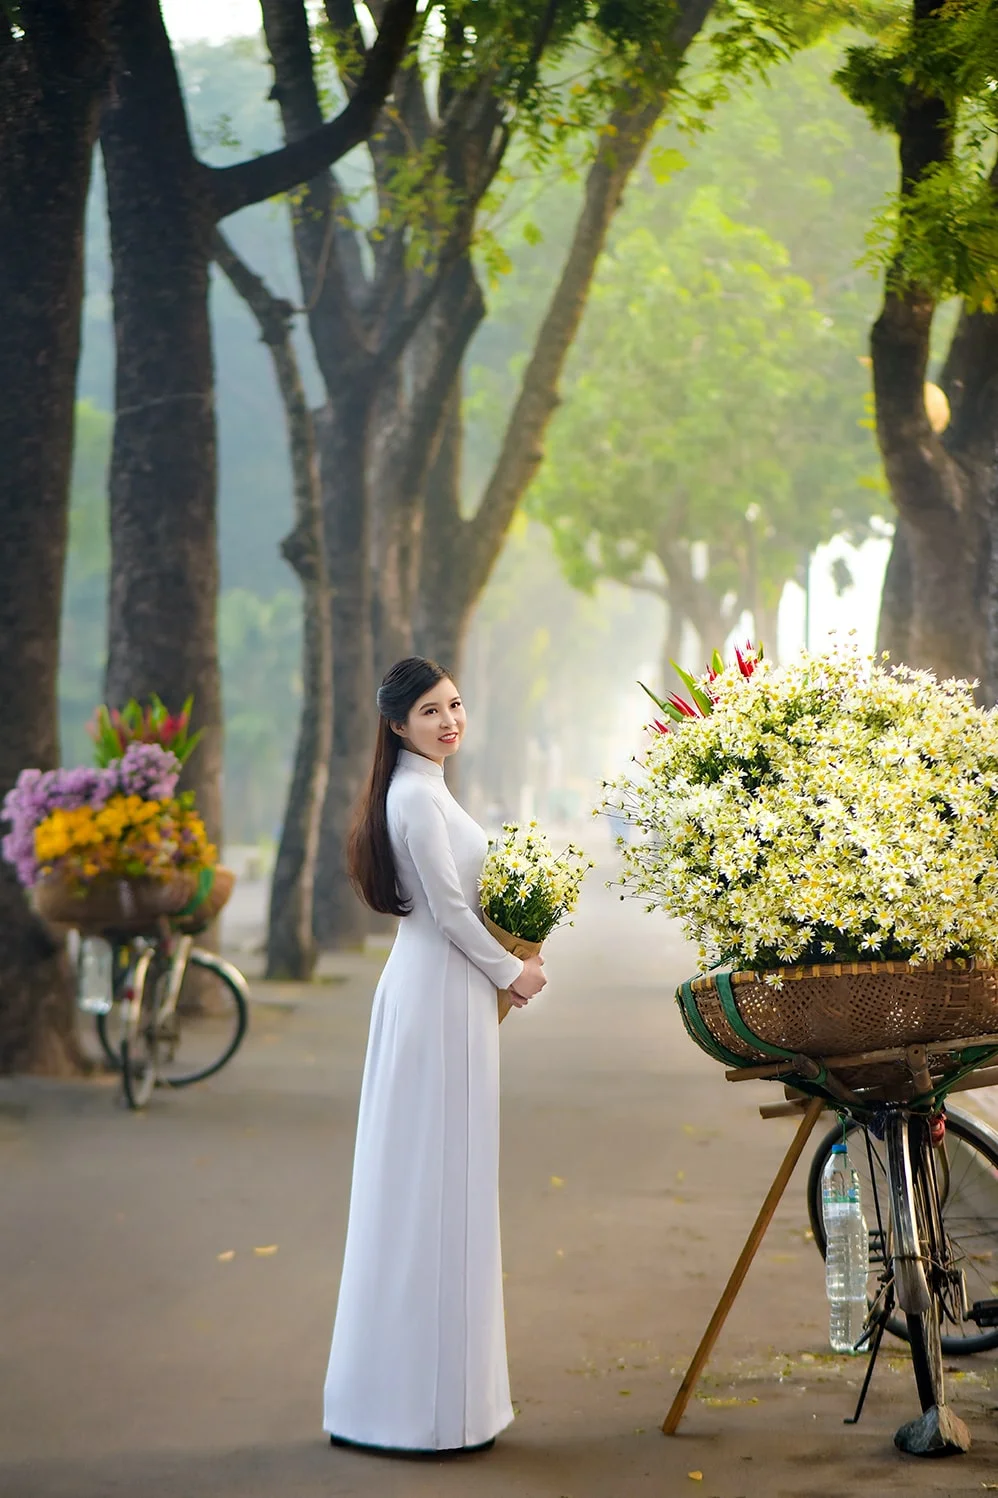 Giá chụp ảnh áo dài ngoại cảnh ở Hà Nội bao nhiêu